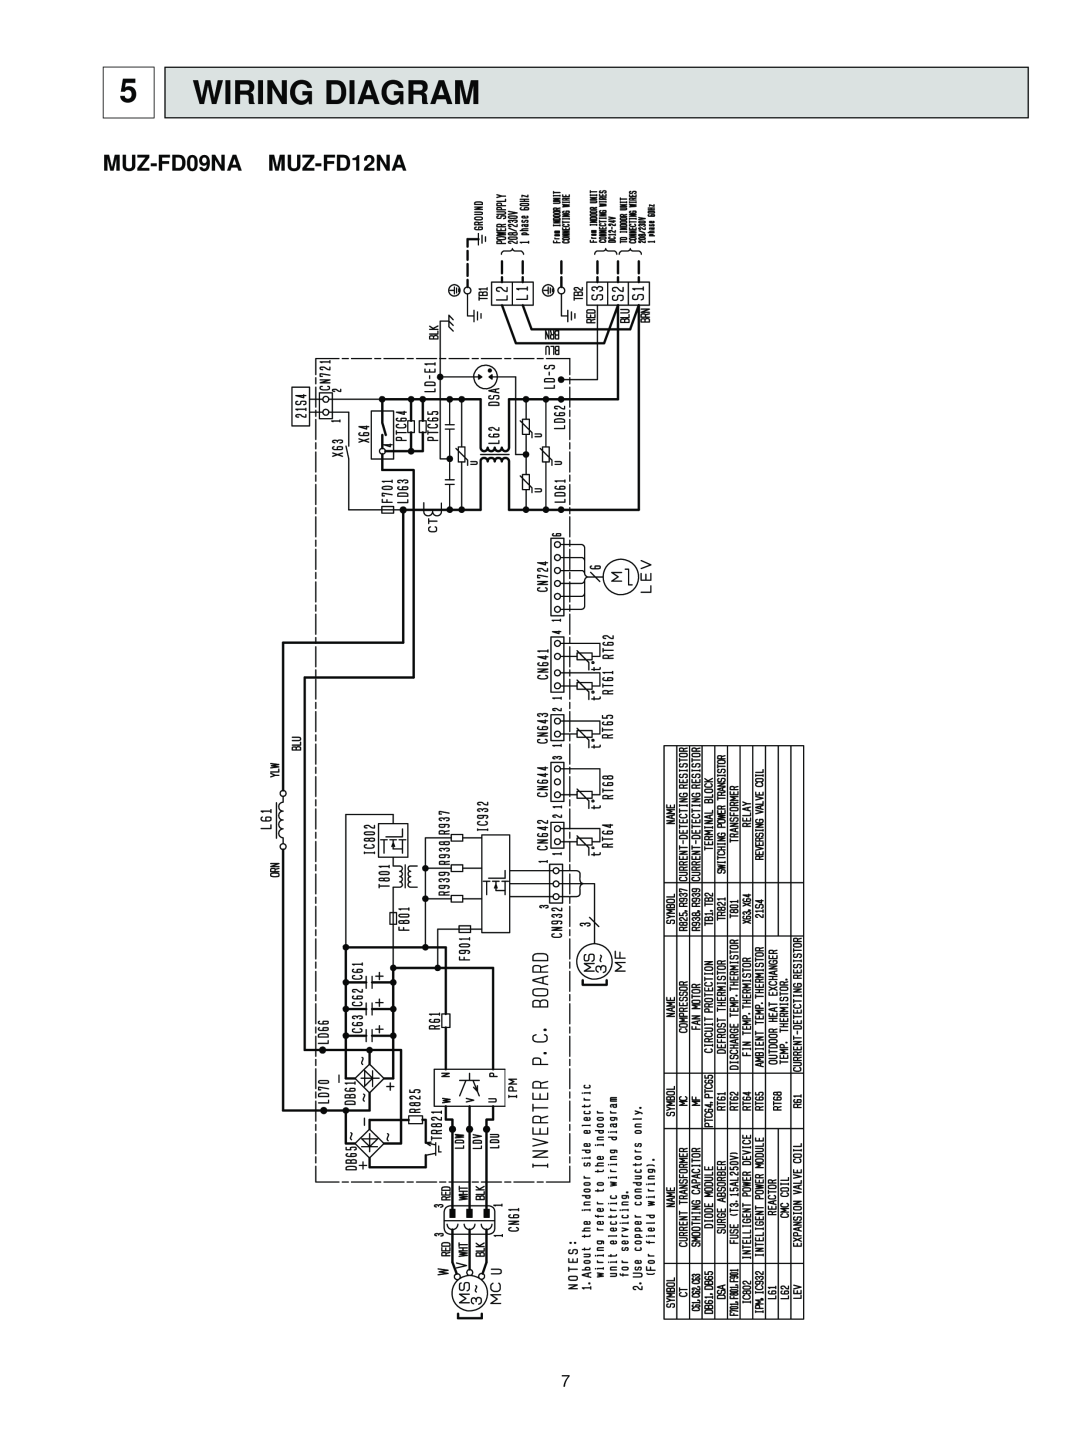 Black & Decker MUZ-FD12NA- U1, MUZ-FD09NA- U1 service manual Wiring Diagram, MUZ-FD09NA MUZ-FD12NA 